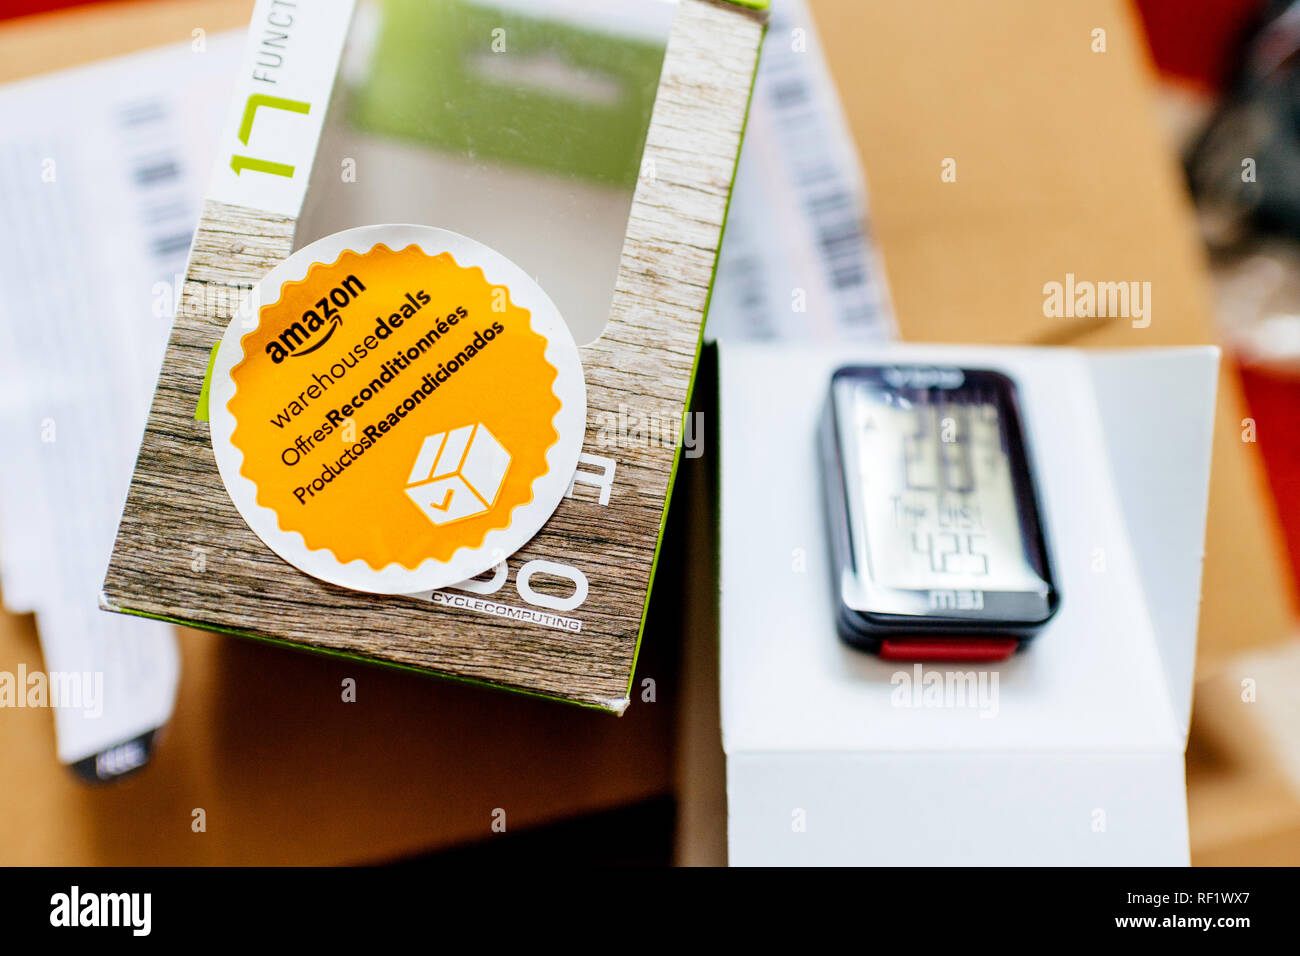 Parigi, Francia - Apr 16, 2018: Amazon offerte di magazzino da Amazon adesivo sfocati e computer per bici - vista da sopra la scatola di cartone Foto Stock